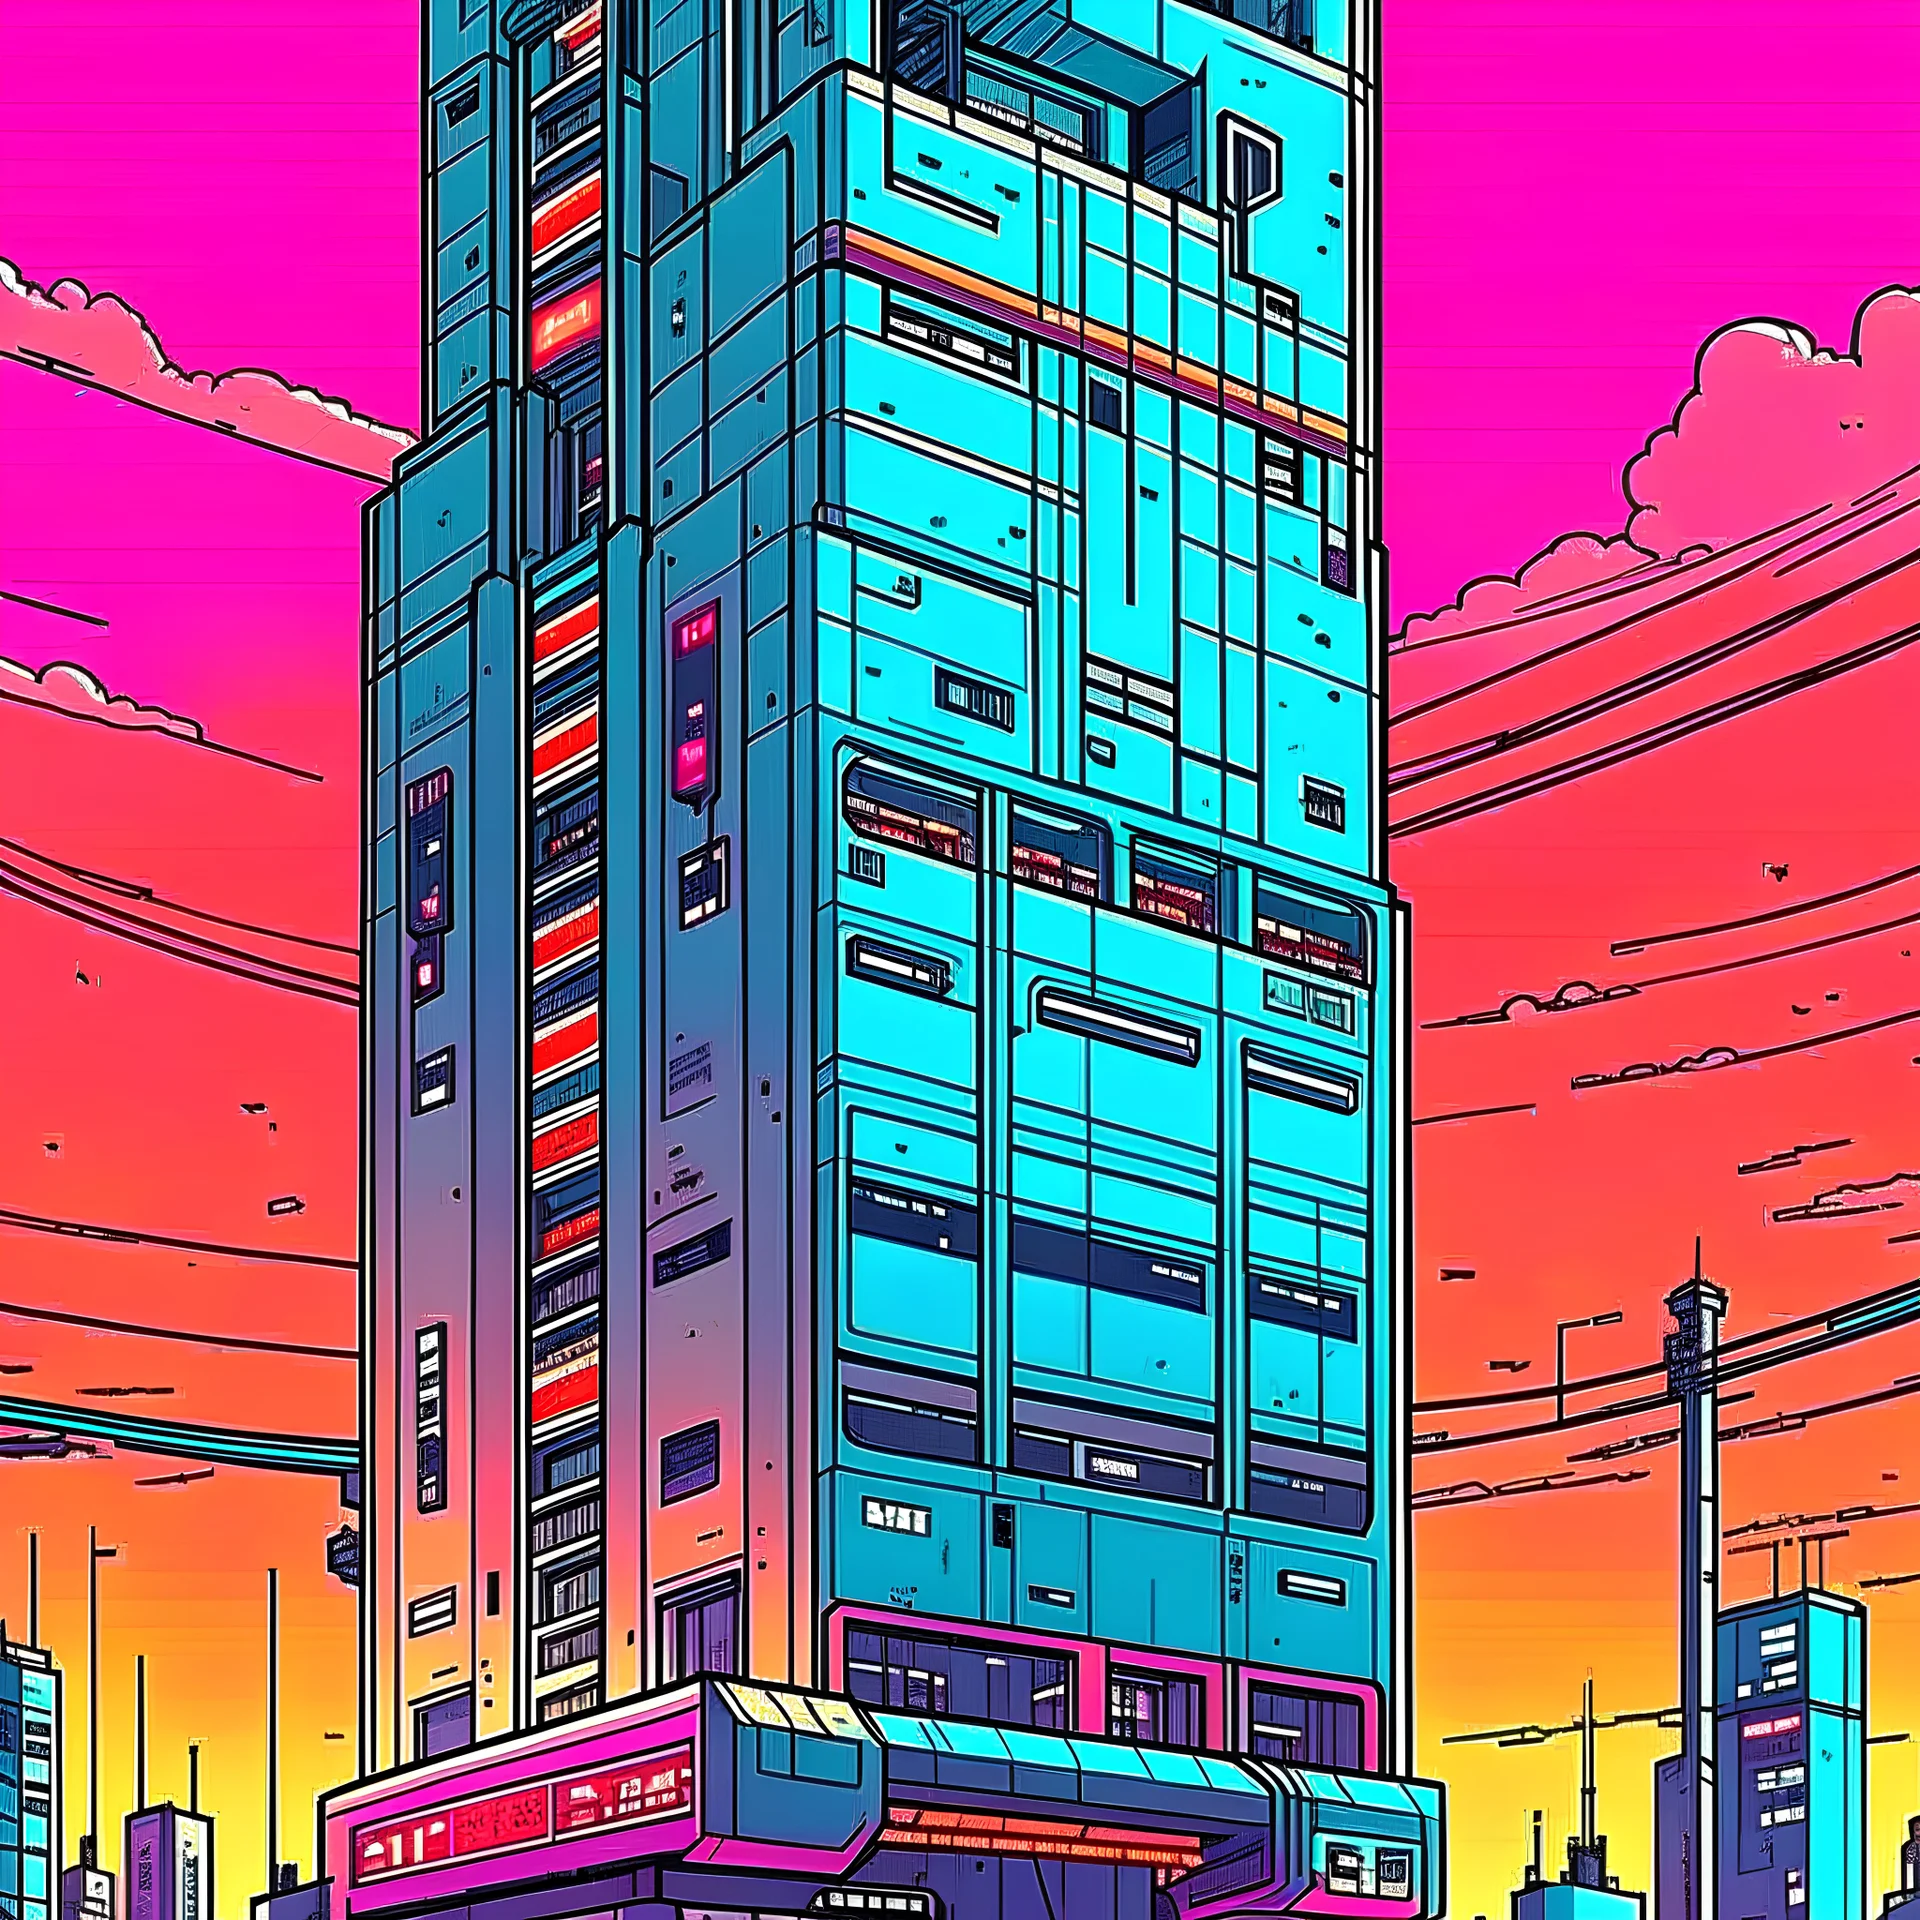 cyberpunk retro futuristic for comics skyscraper from far away